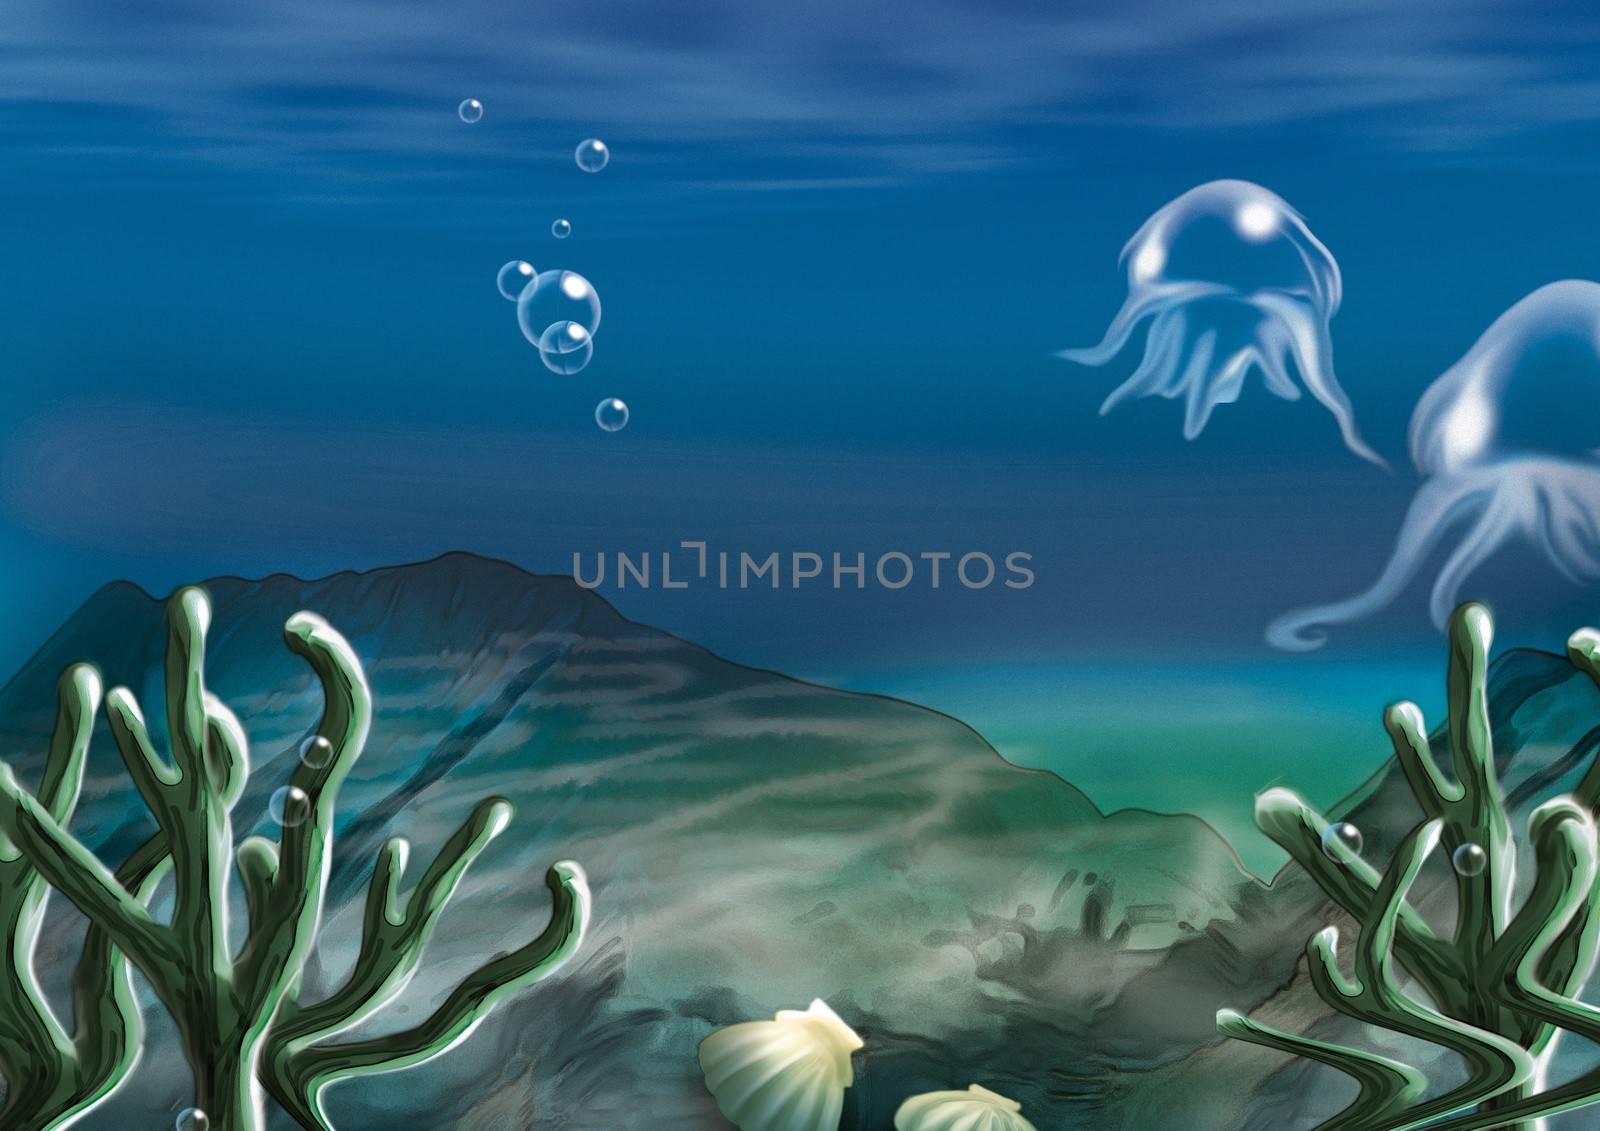 Underwater Scene - Background Illustration